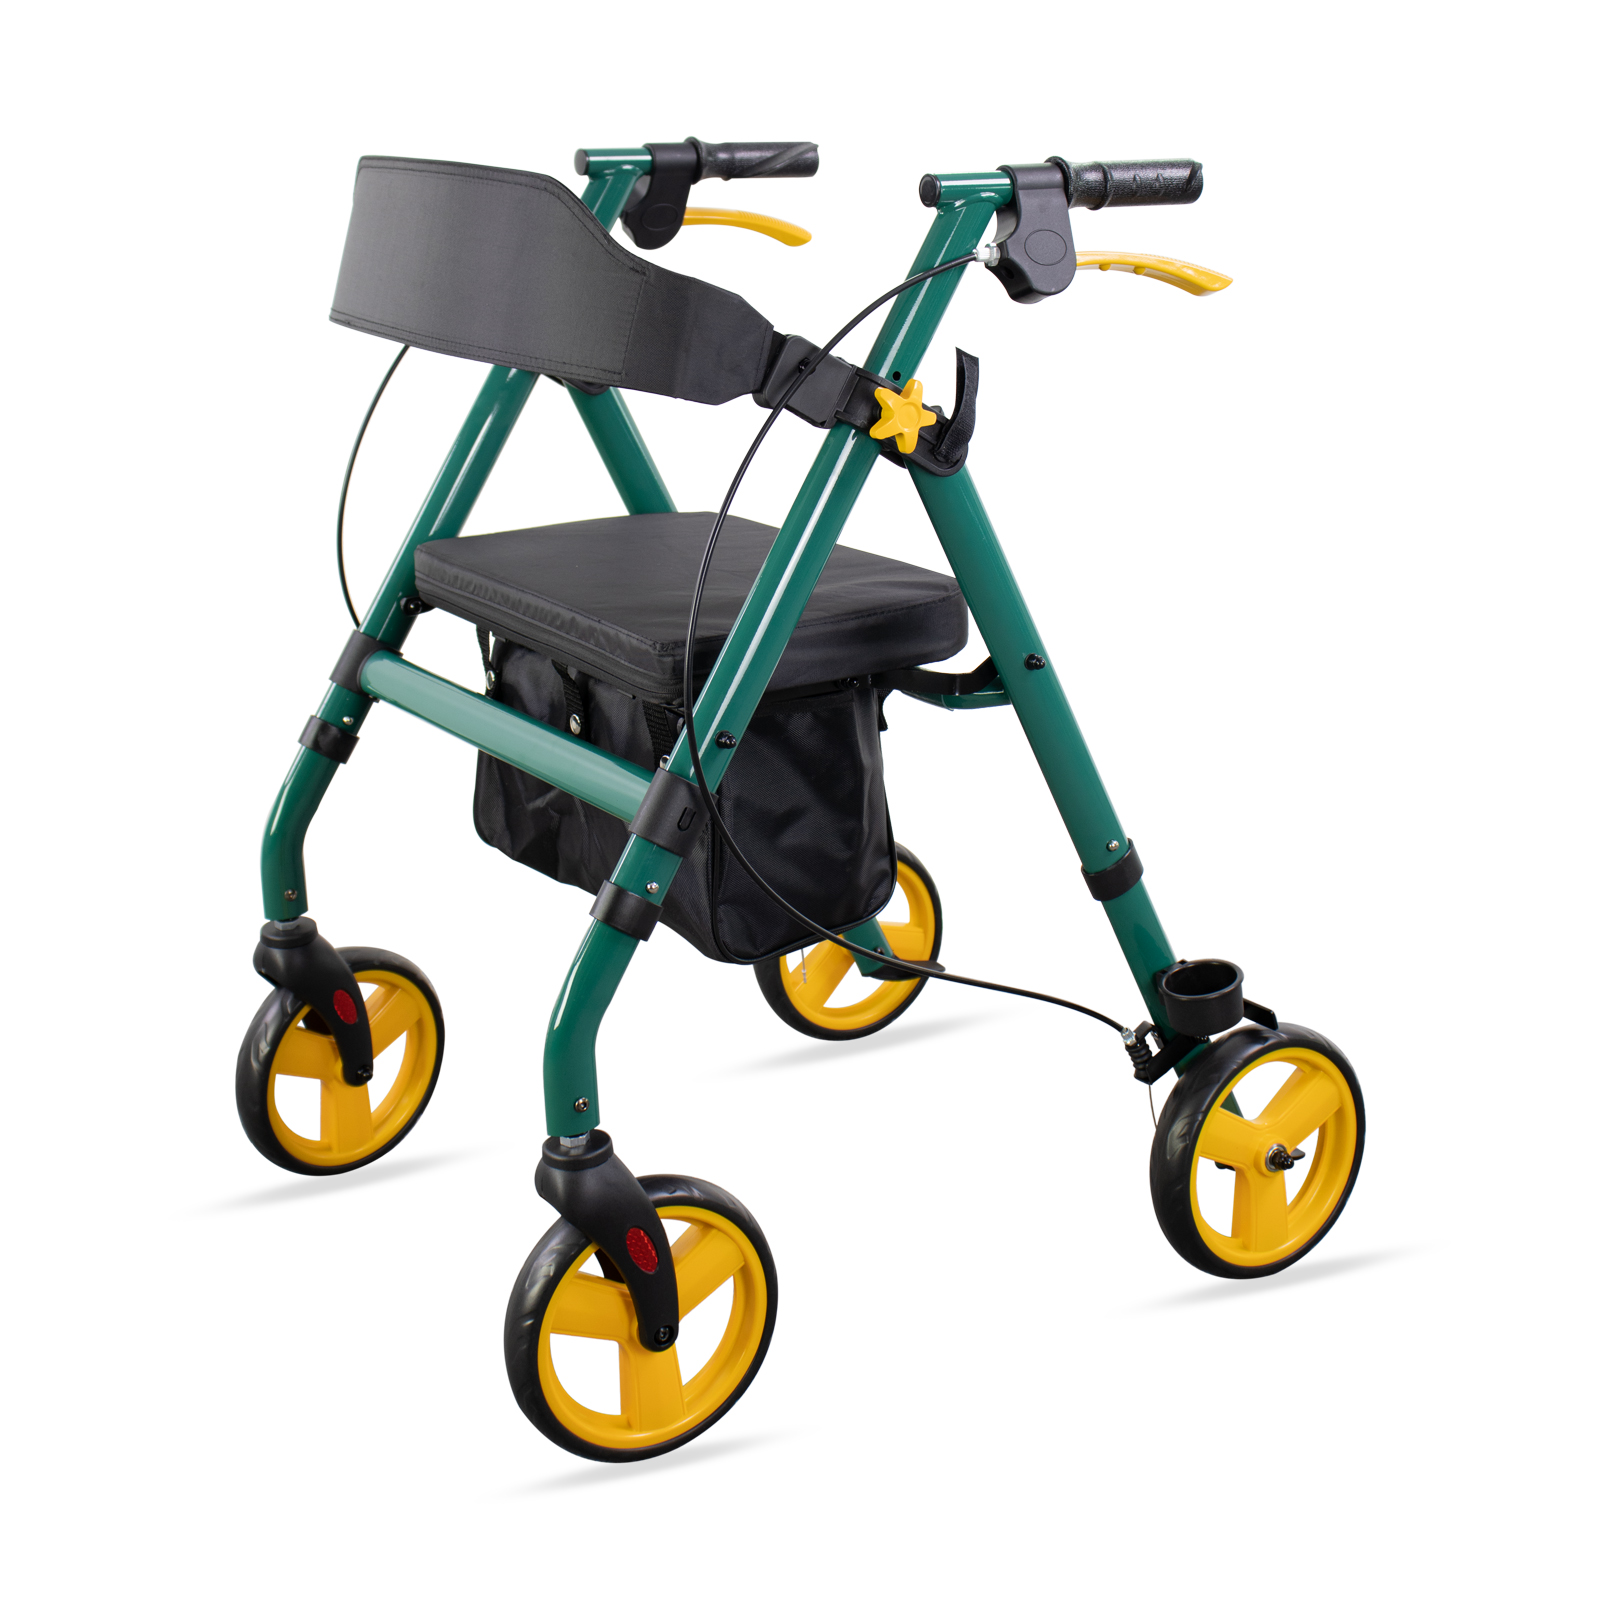 Elderly walker multifunctional four-wheeled adult stroller to assist the elderly walker walking scooter rollator walker